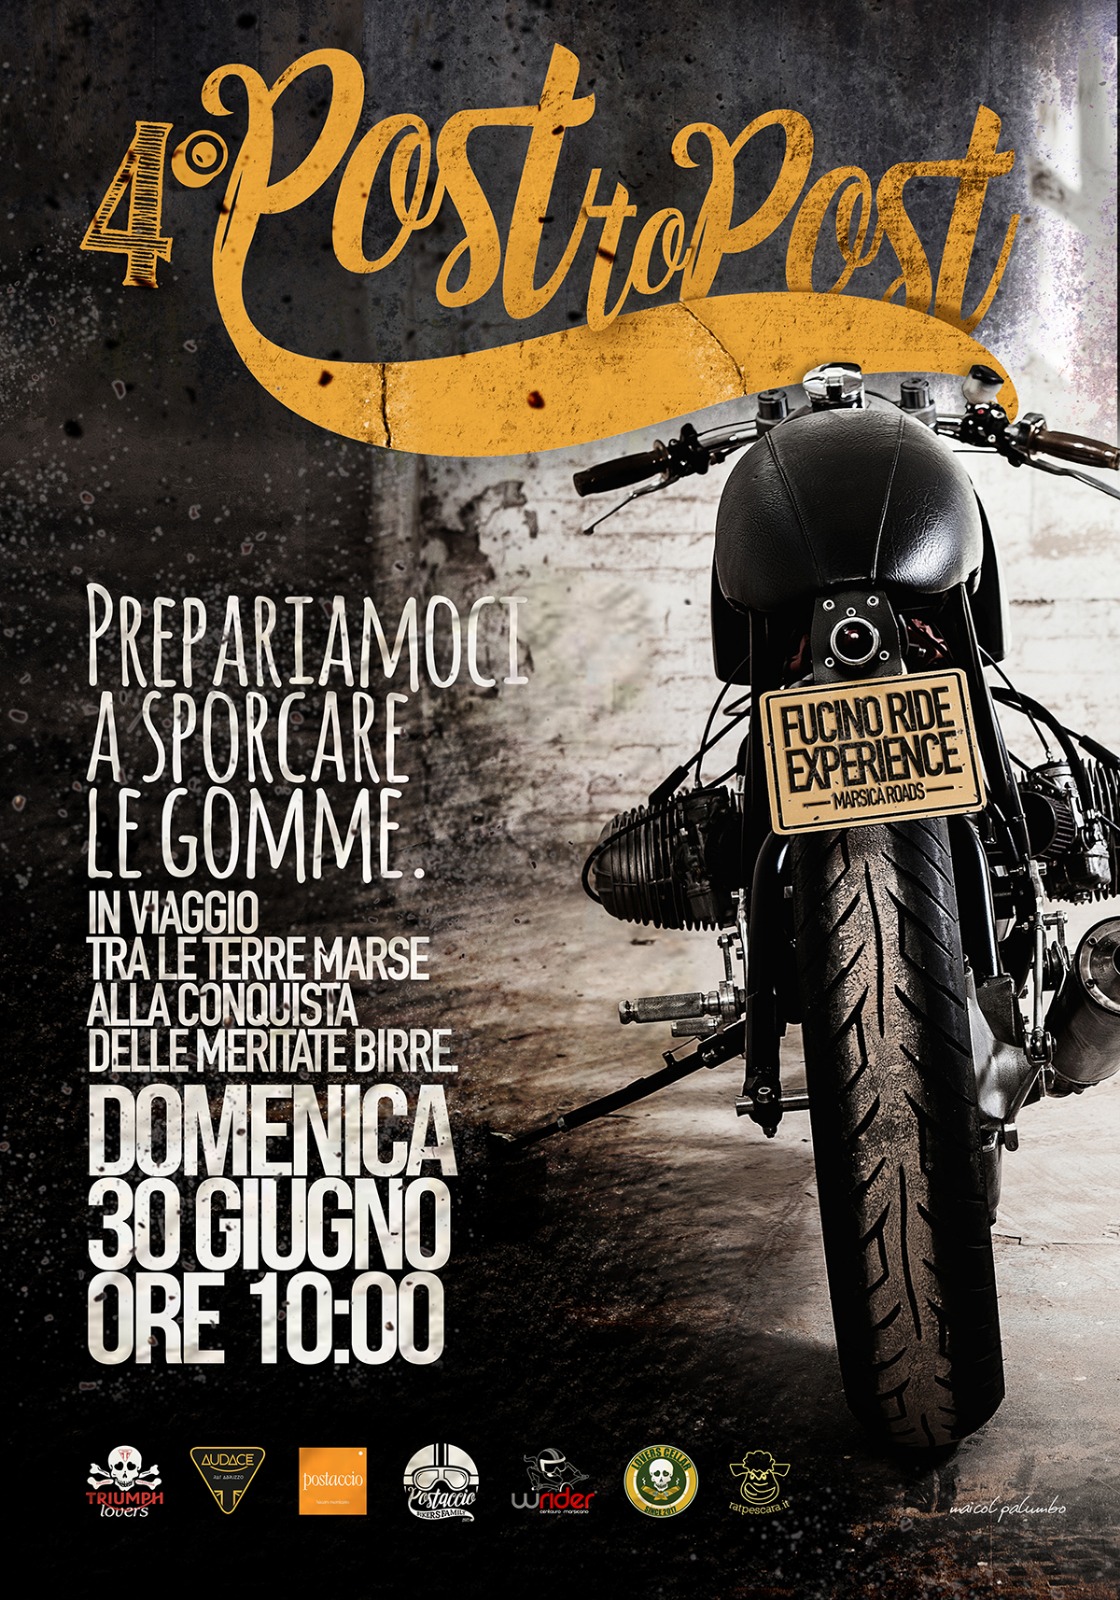 Motori accesi per il 4° Post to post, l’evento motociclistico marsicano ideato dai due amici Avezzanesi Paolo Verna e Maicol Palumbo